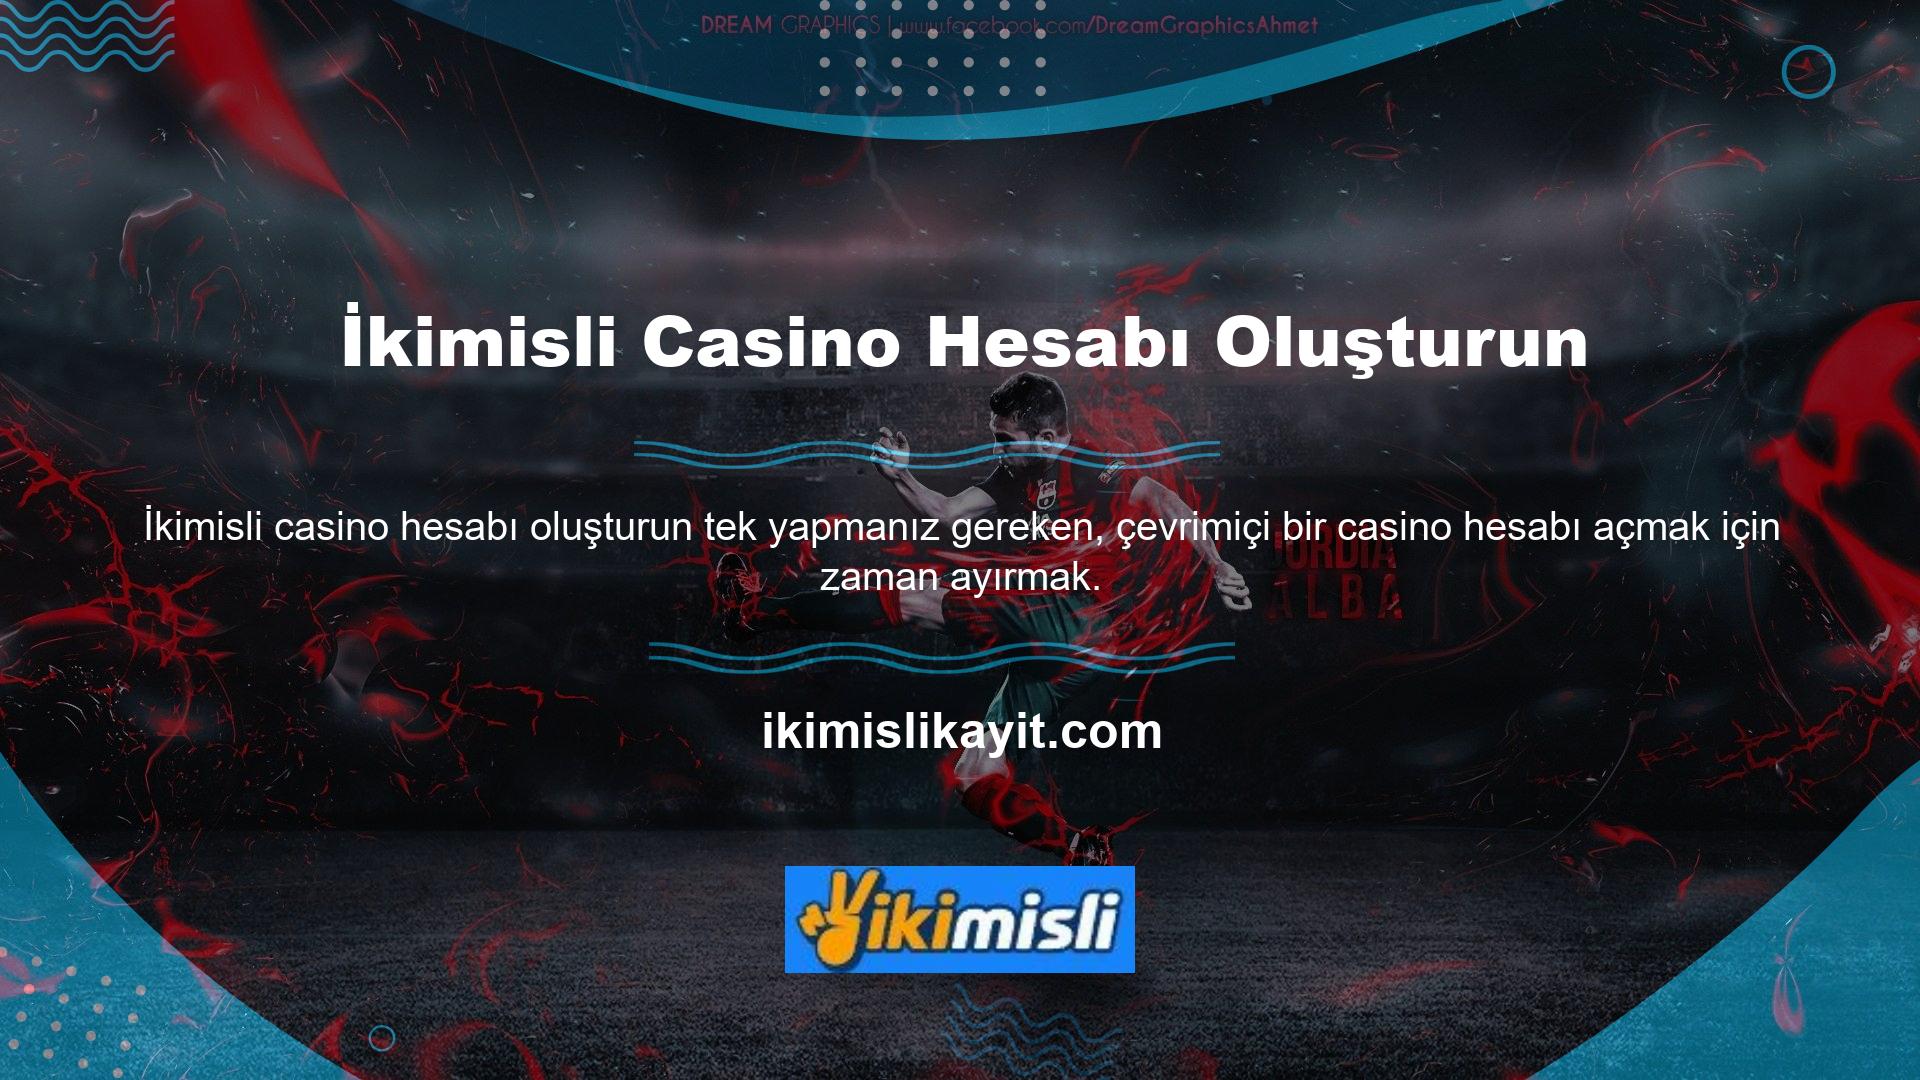 Canlı casino sitelerinin güvenli ve kaliteli olması oyuncular için önemlidir